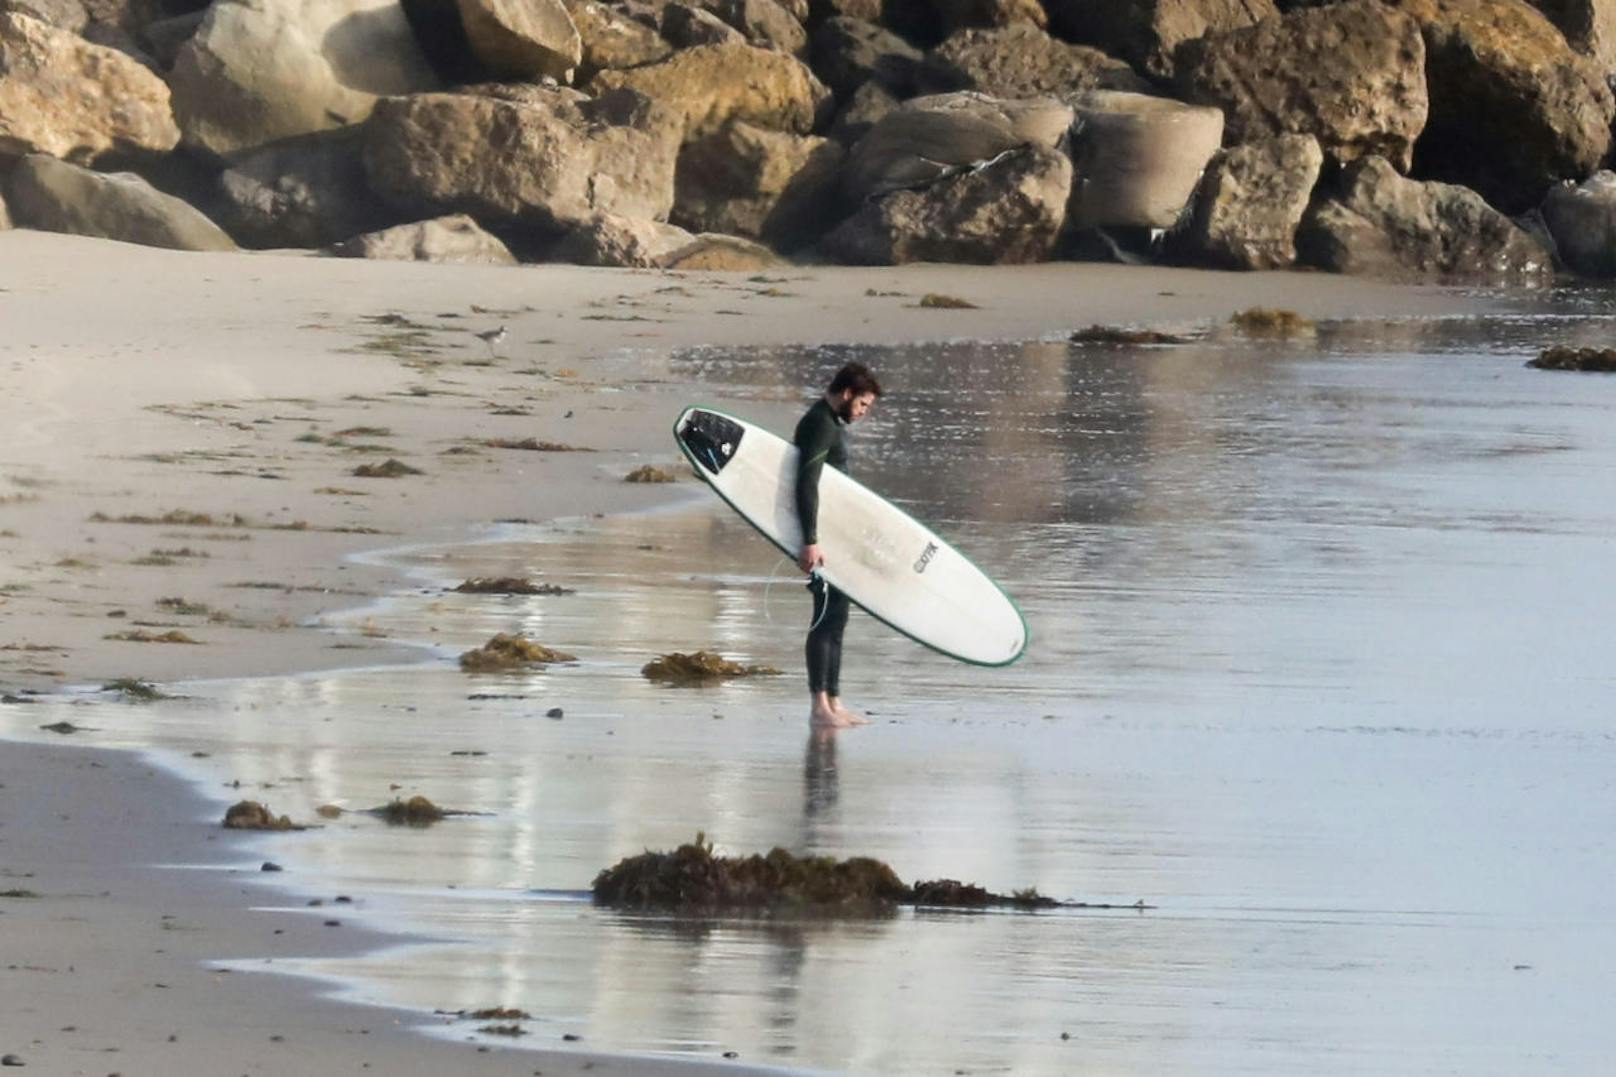 Dem Surfboard sieht man an, dass Liam öfter damit Baden geht